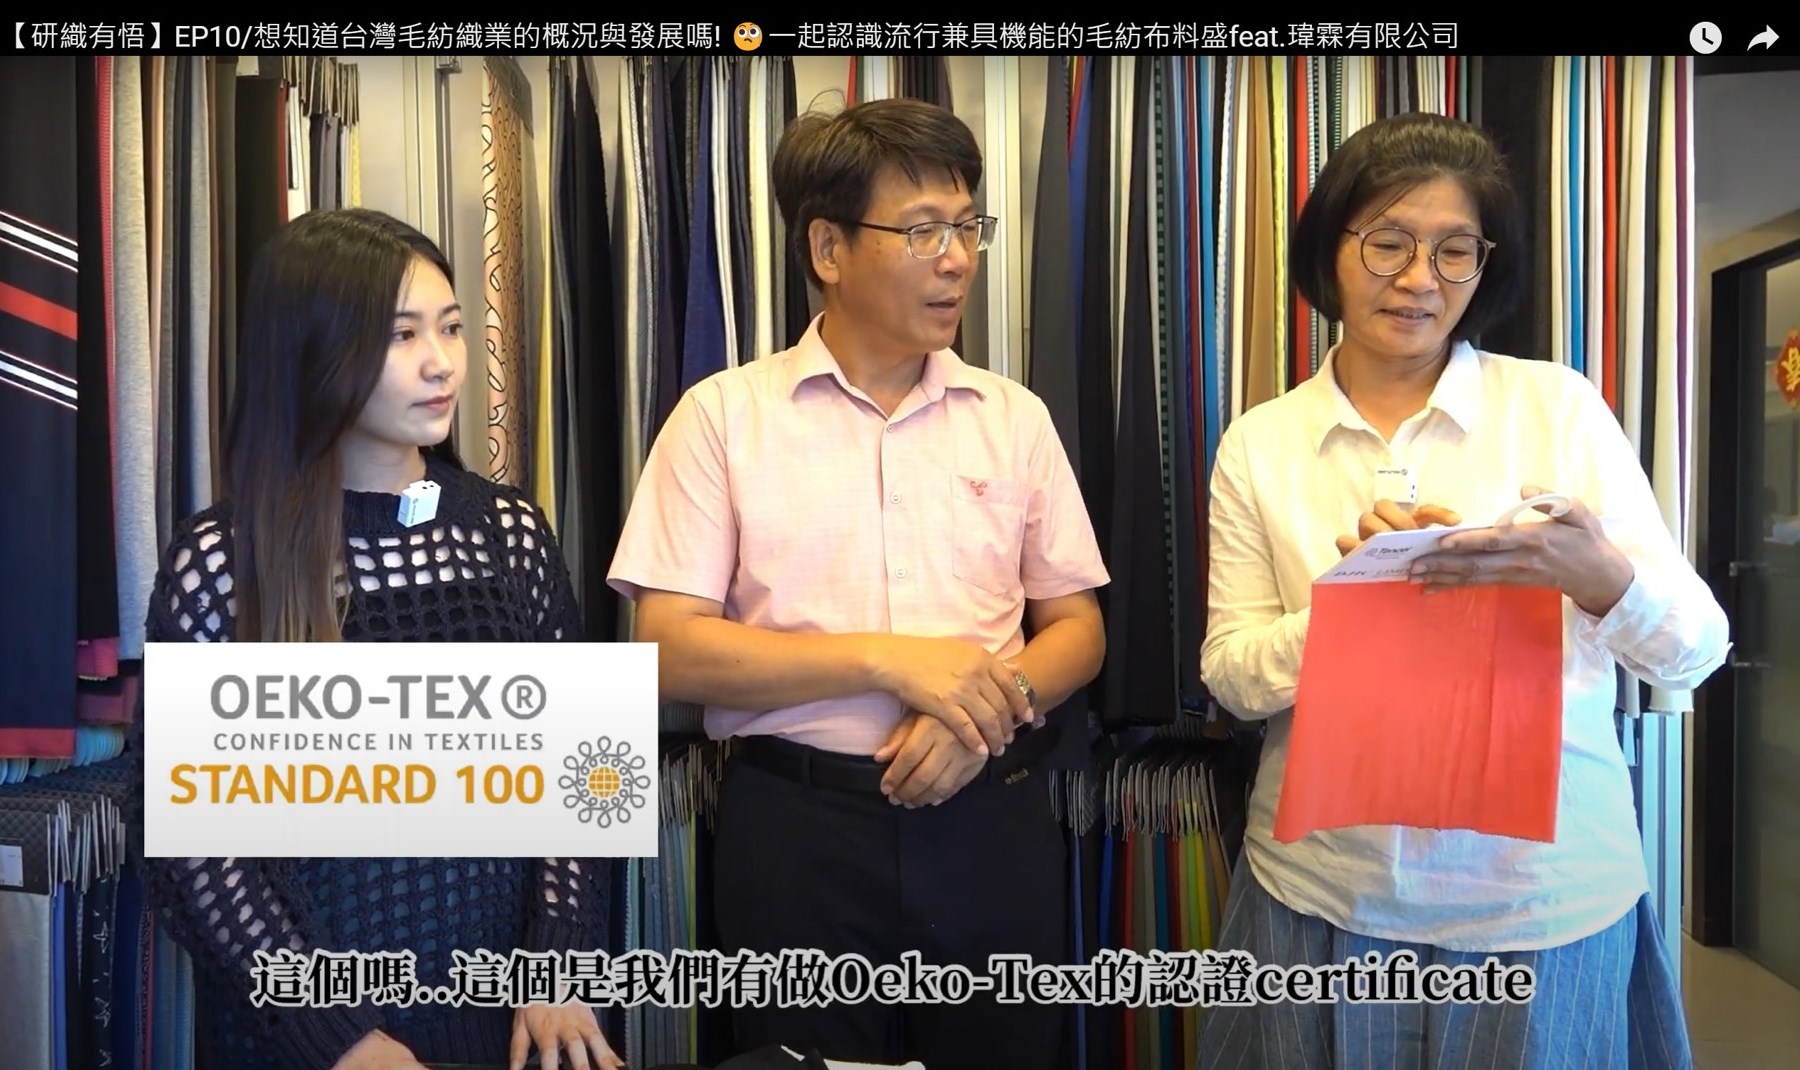 【研織有悟】EP10/想知道台灣毛紡織業的概況與發展嗎! 🧐一起認識流行兼具機能的毛紡布料 feat. 瑋霖有限公司